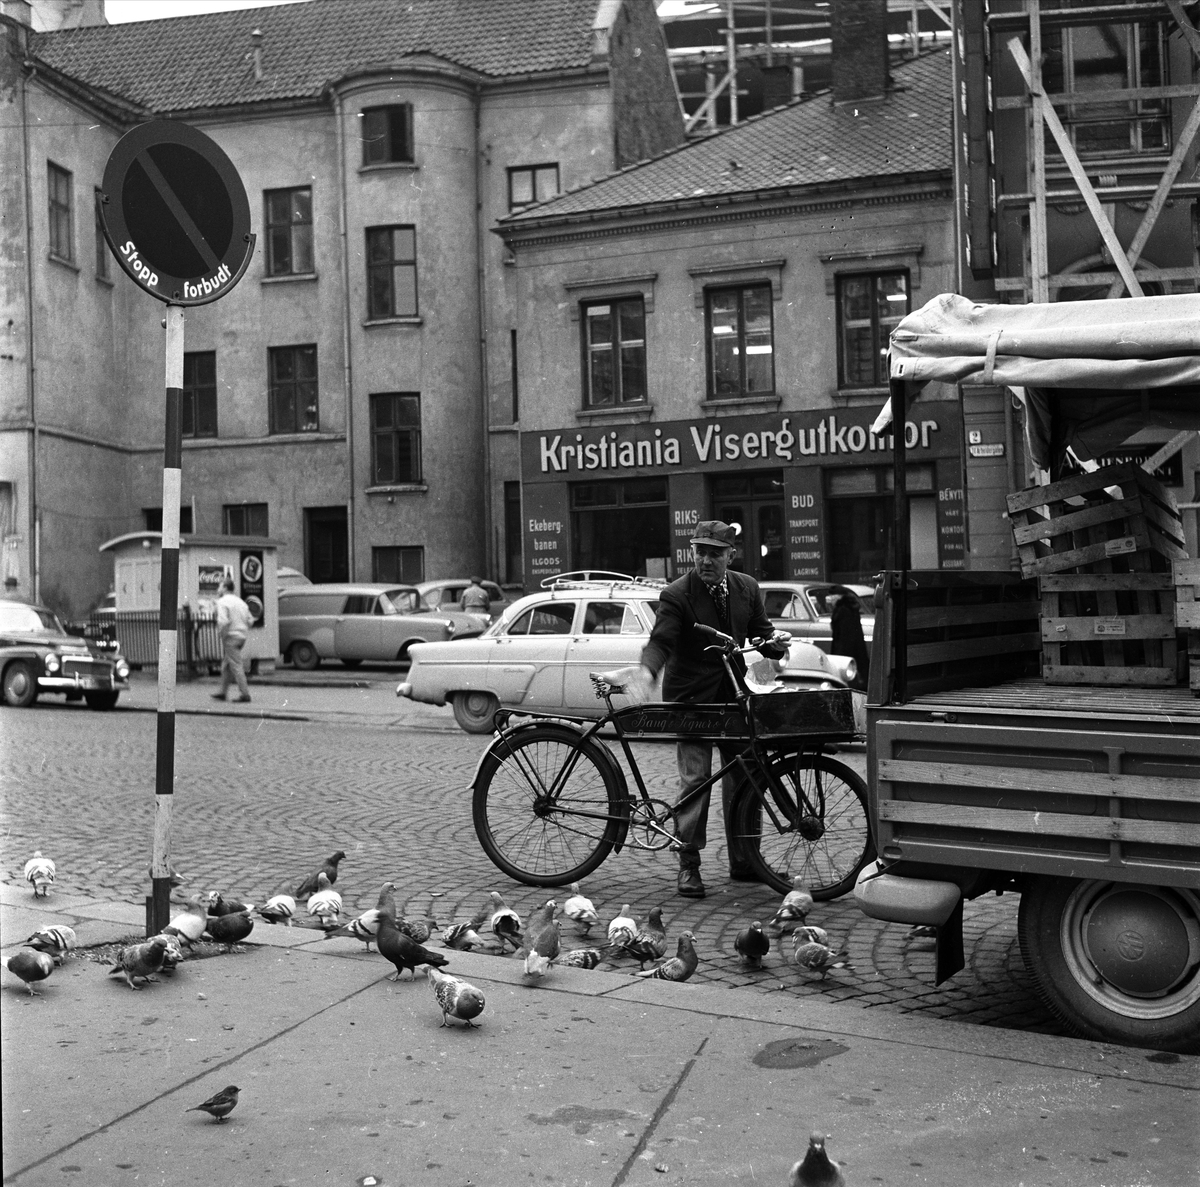 Professor Aschehougs plass, Oslo, oktober 1960. Bybilde med bygninger, biler og mann med sykkel.